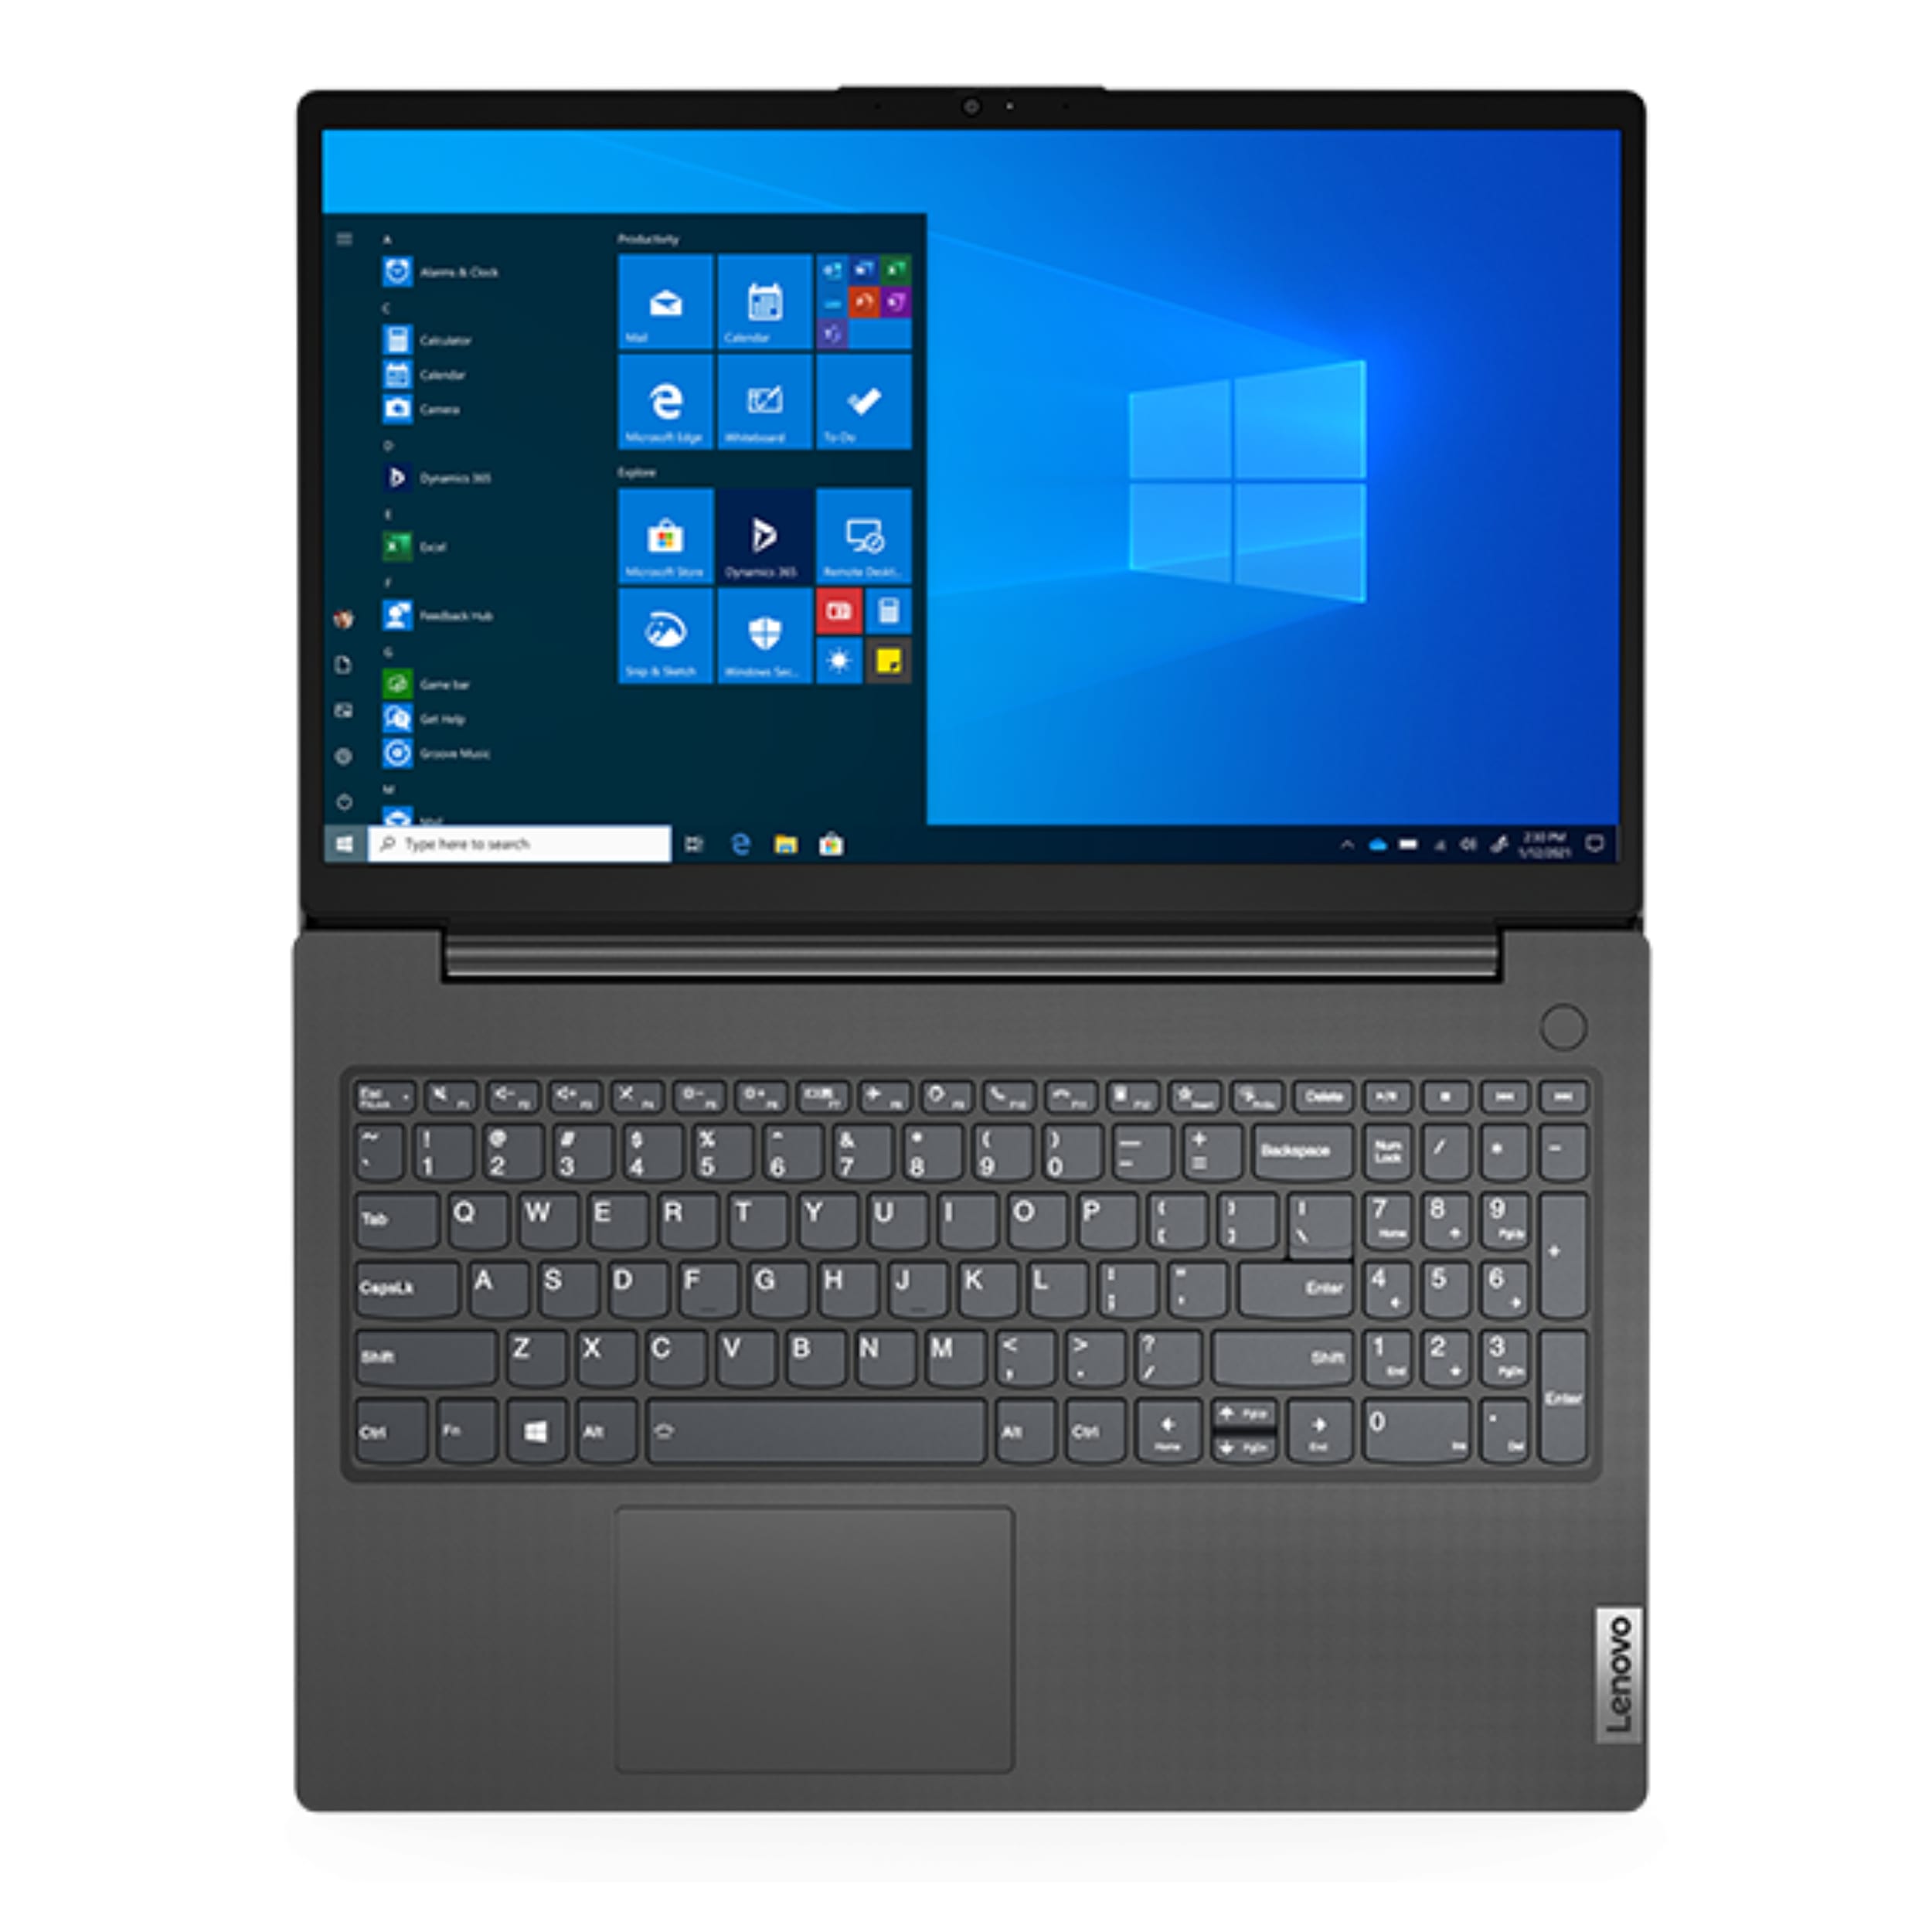 لپ تاپ 15.6 اینچی لنوو مدل Notebook V15 G2 ITL